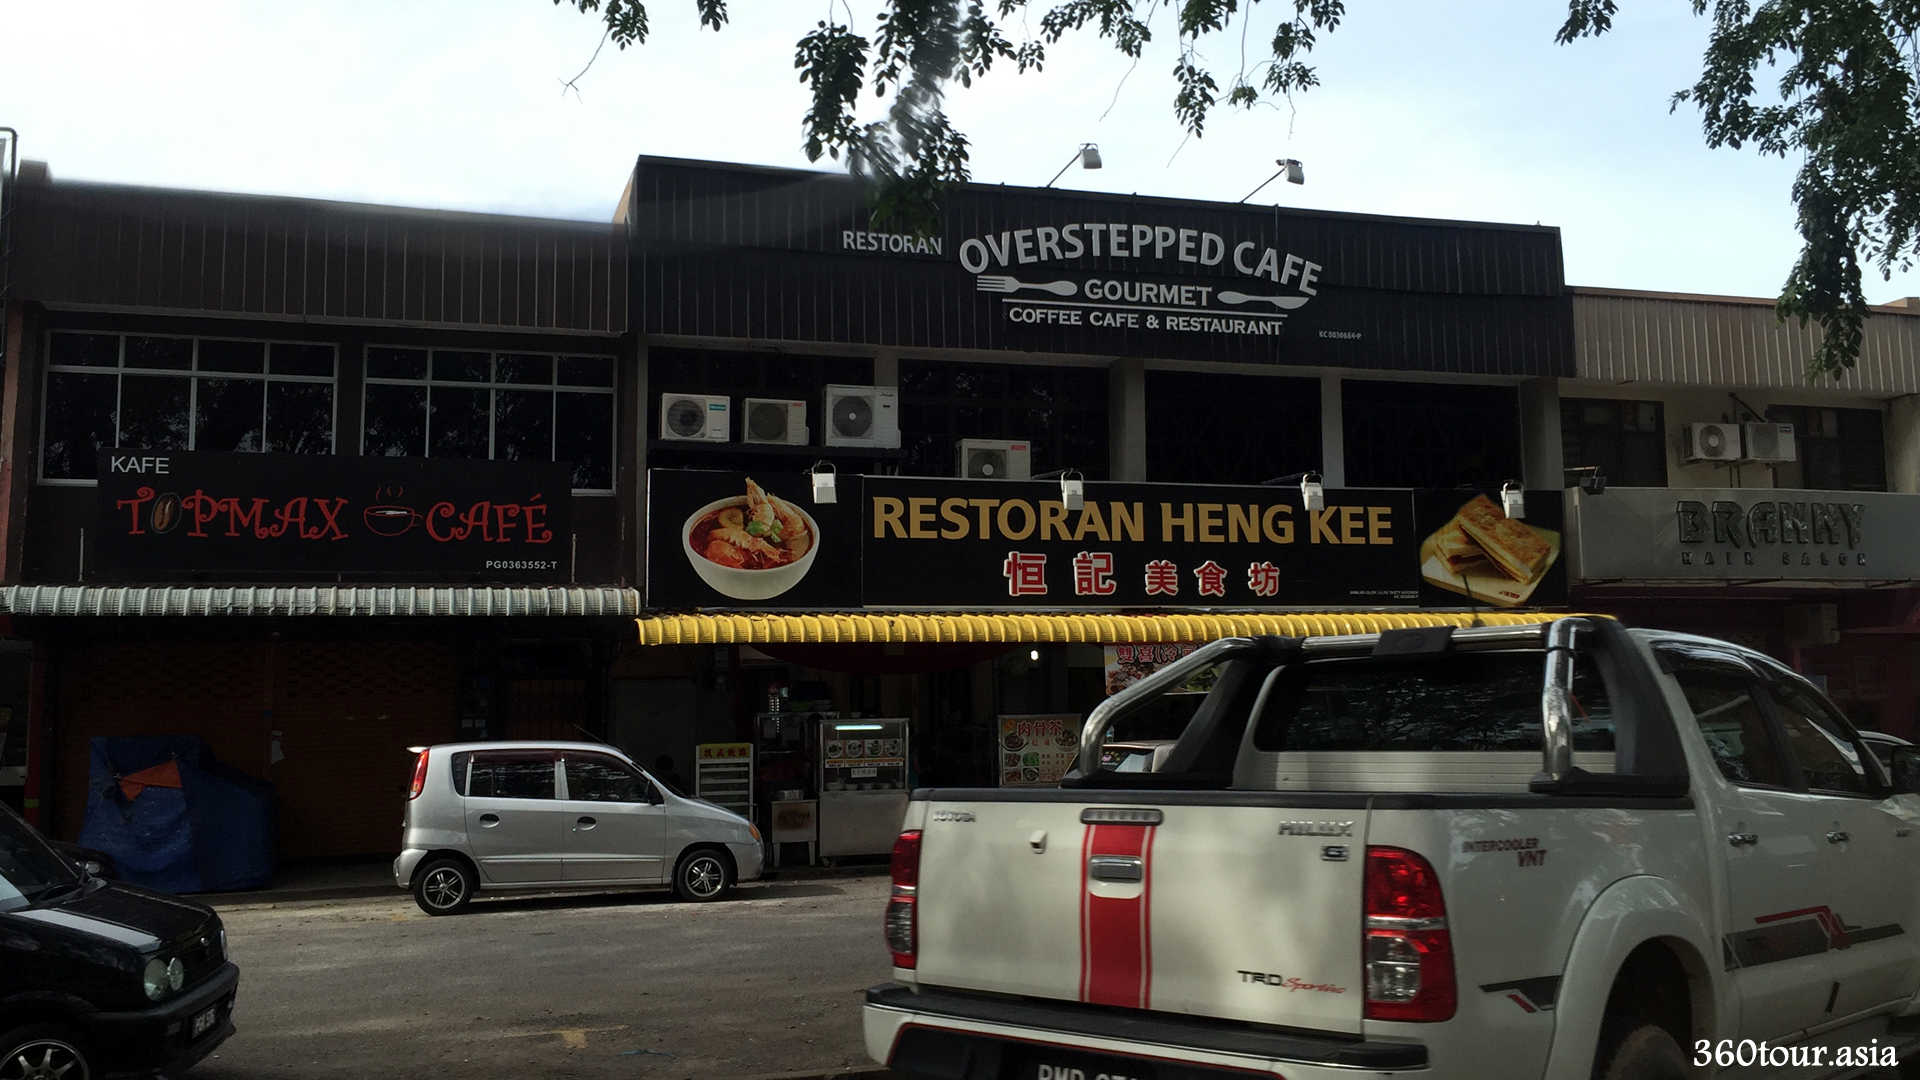 Overstepped Cafe at Sungai Petani Kedah